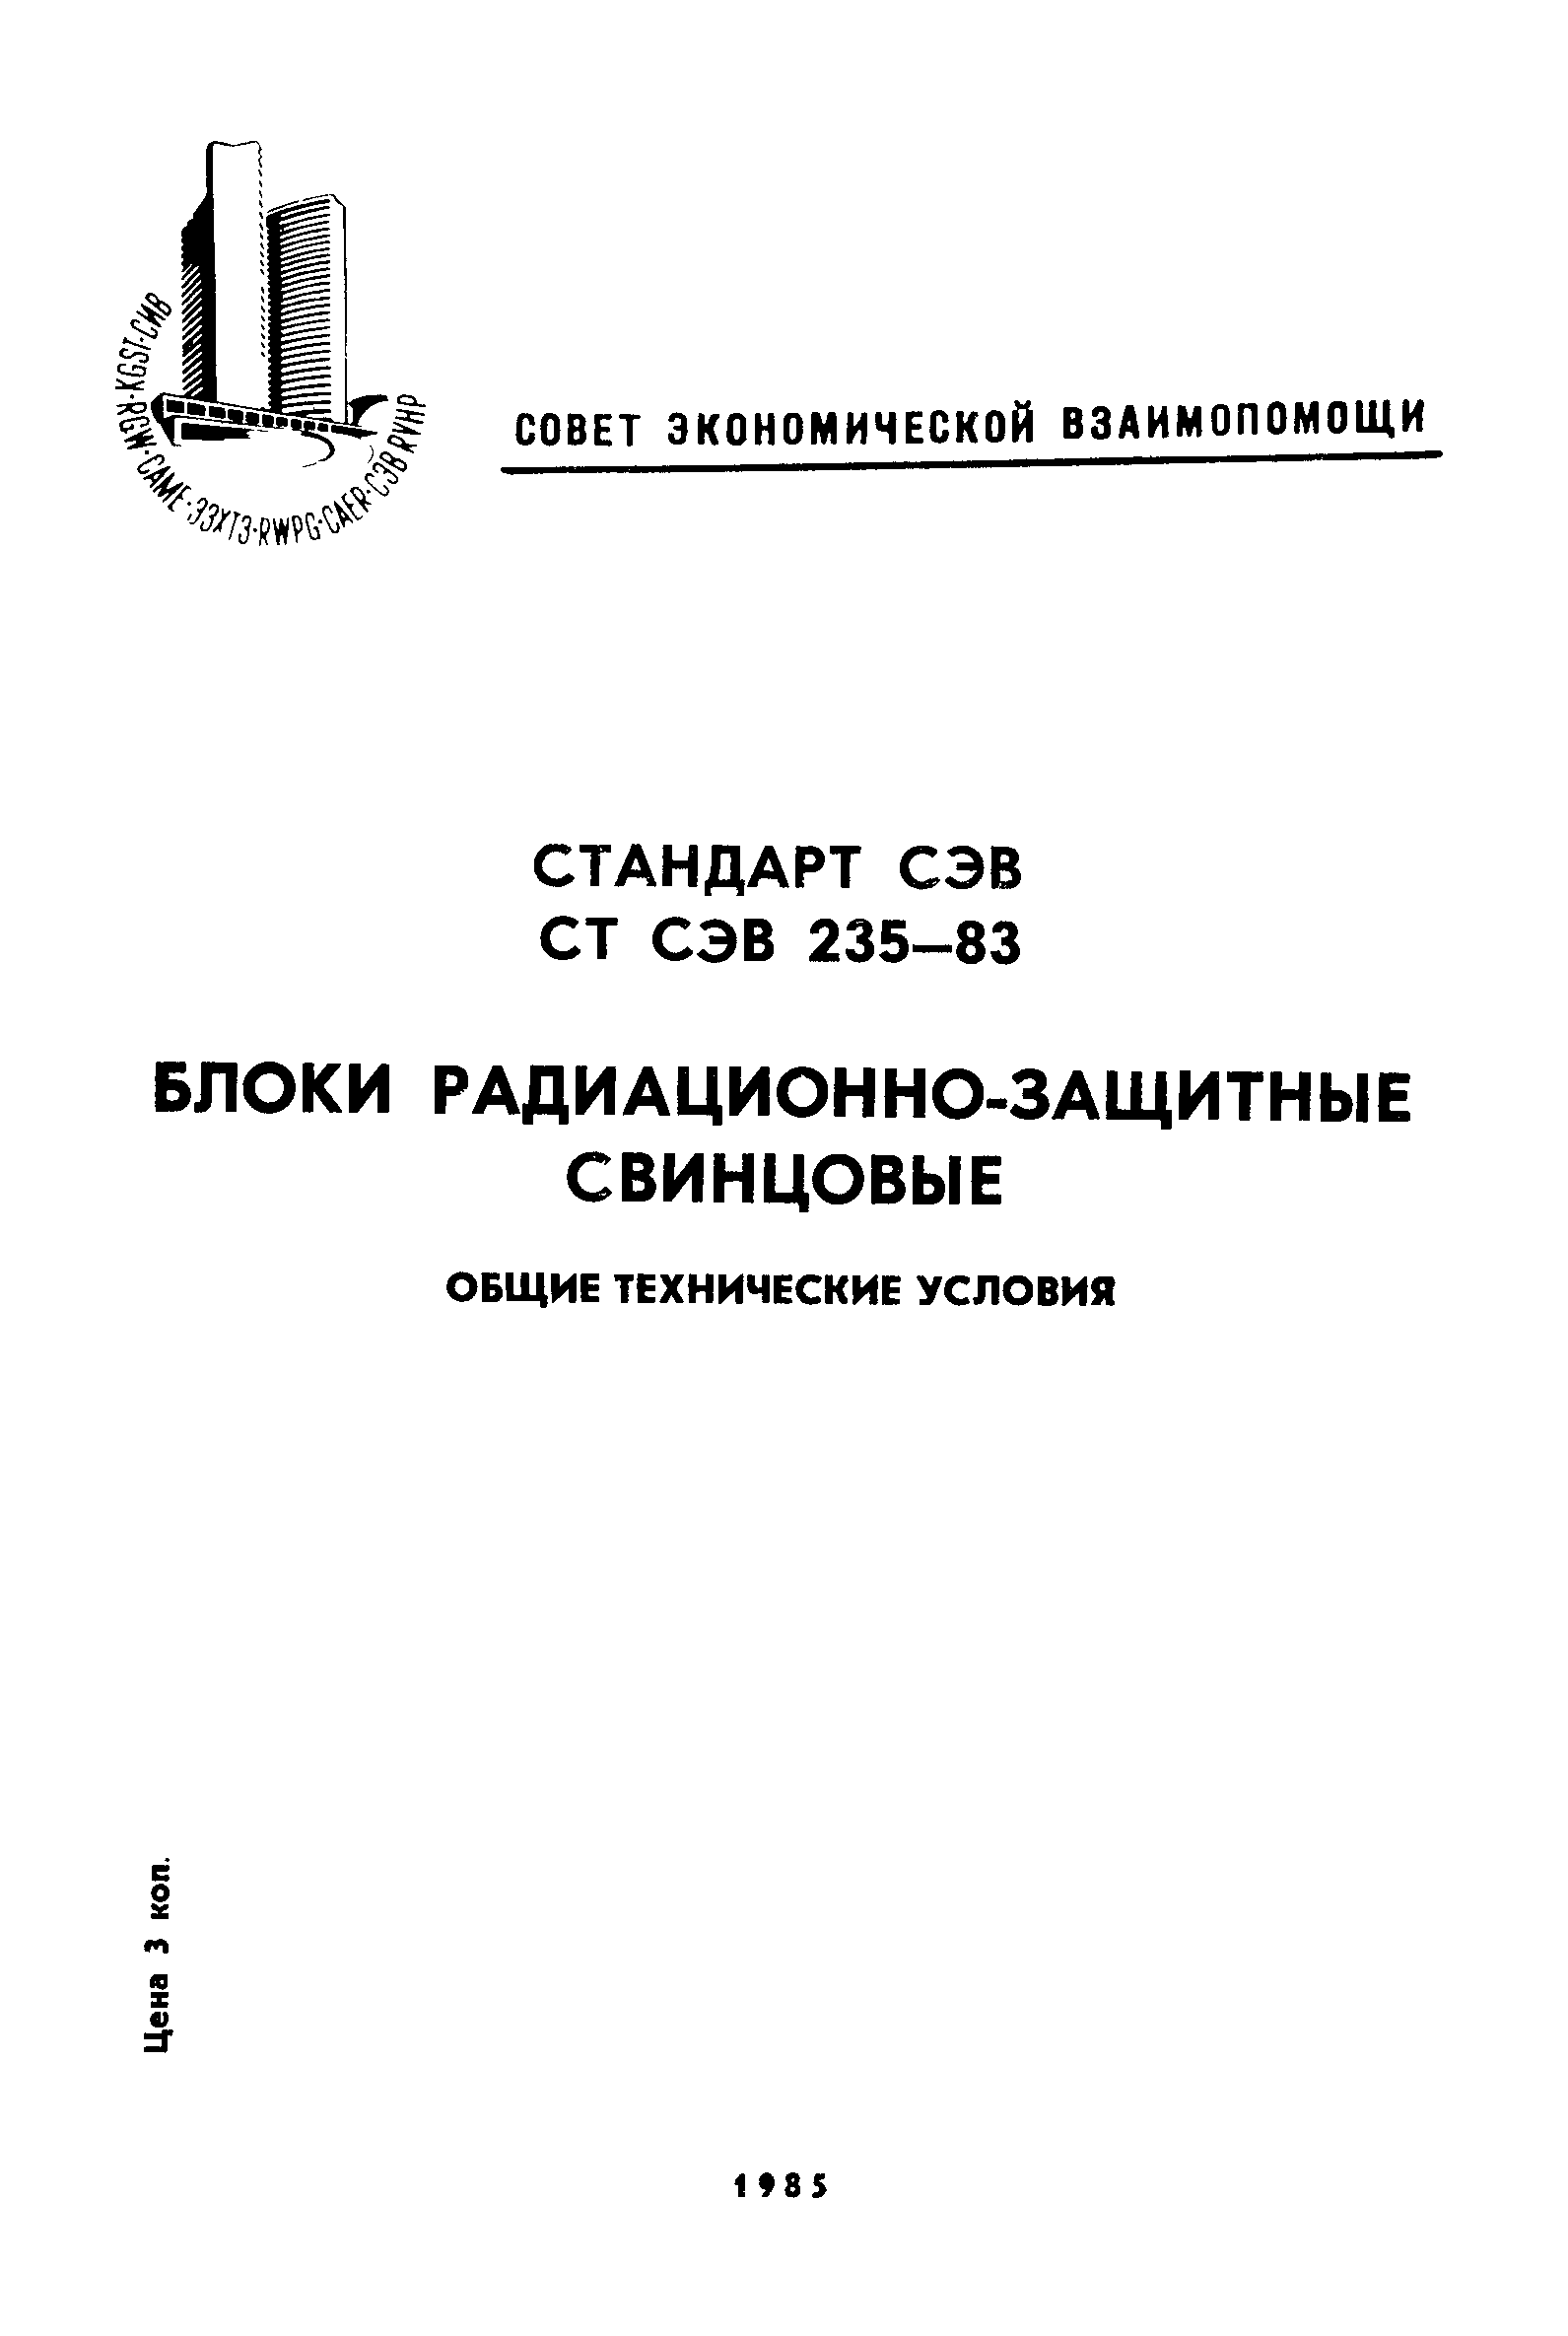 СТ СЭВ 235-83